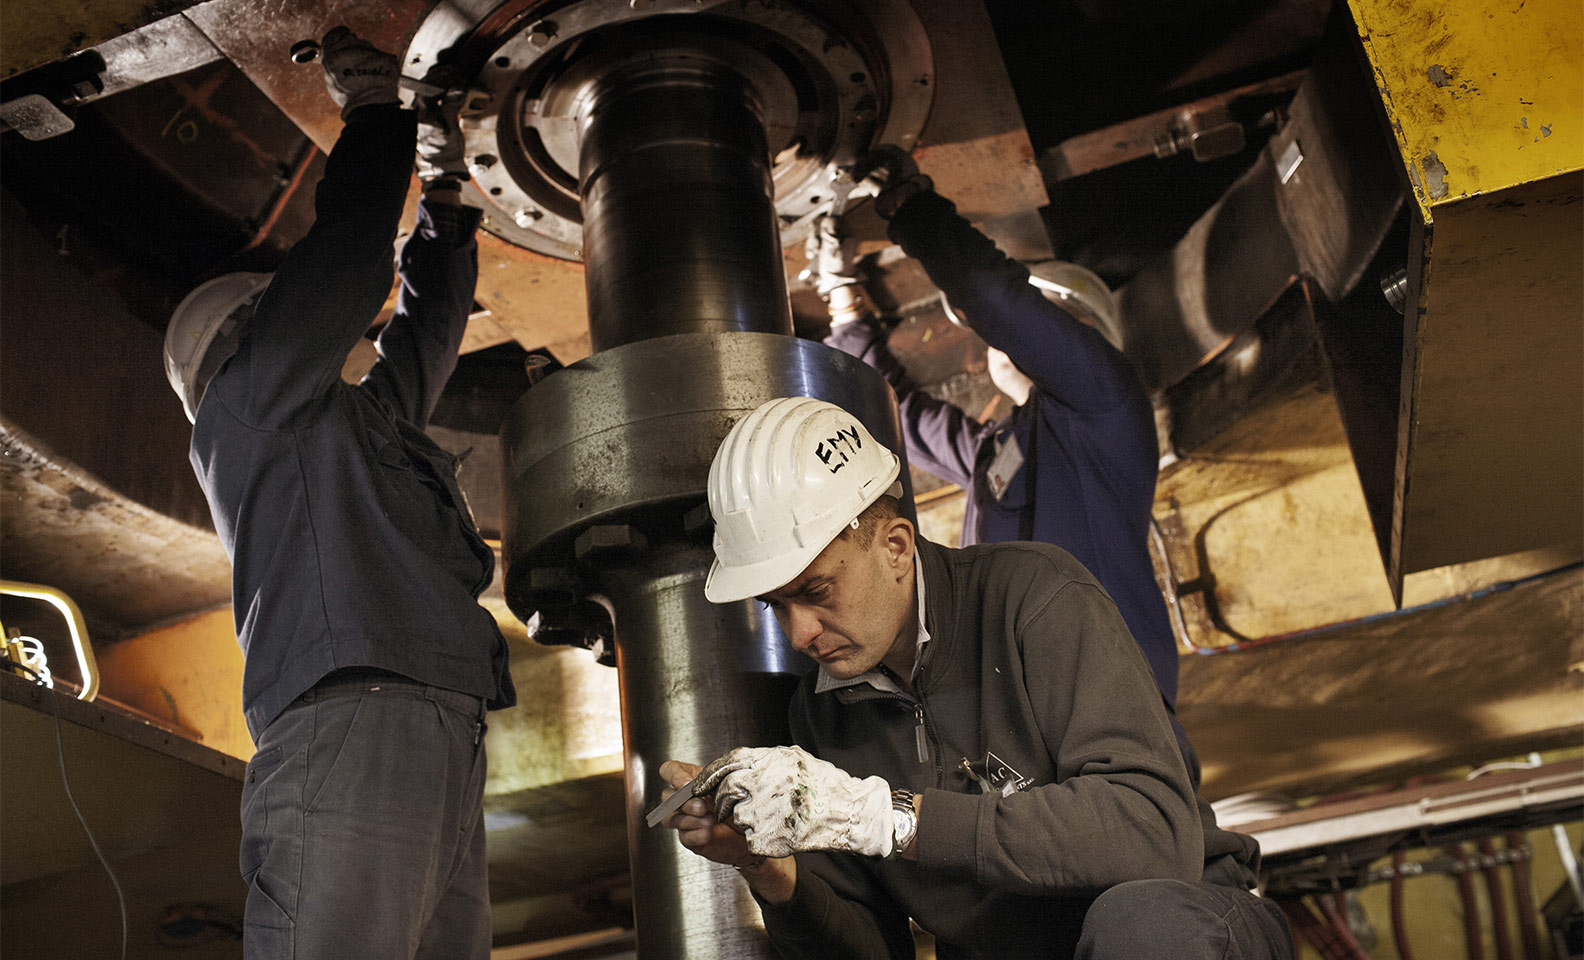 Tecnici al lavoro presso la centrale idroelettrica di Morino - Enel.com